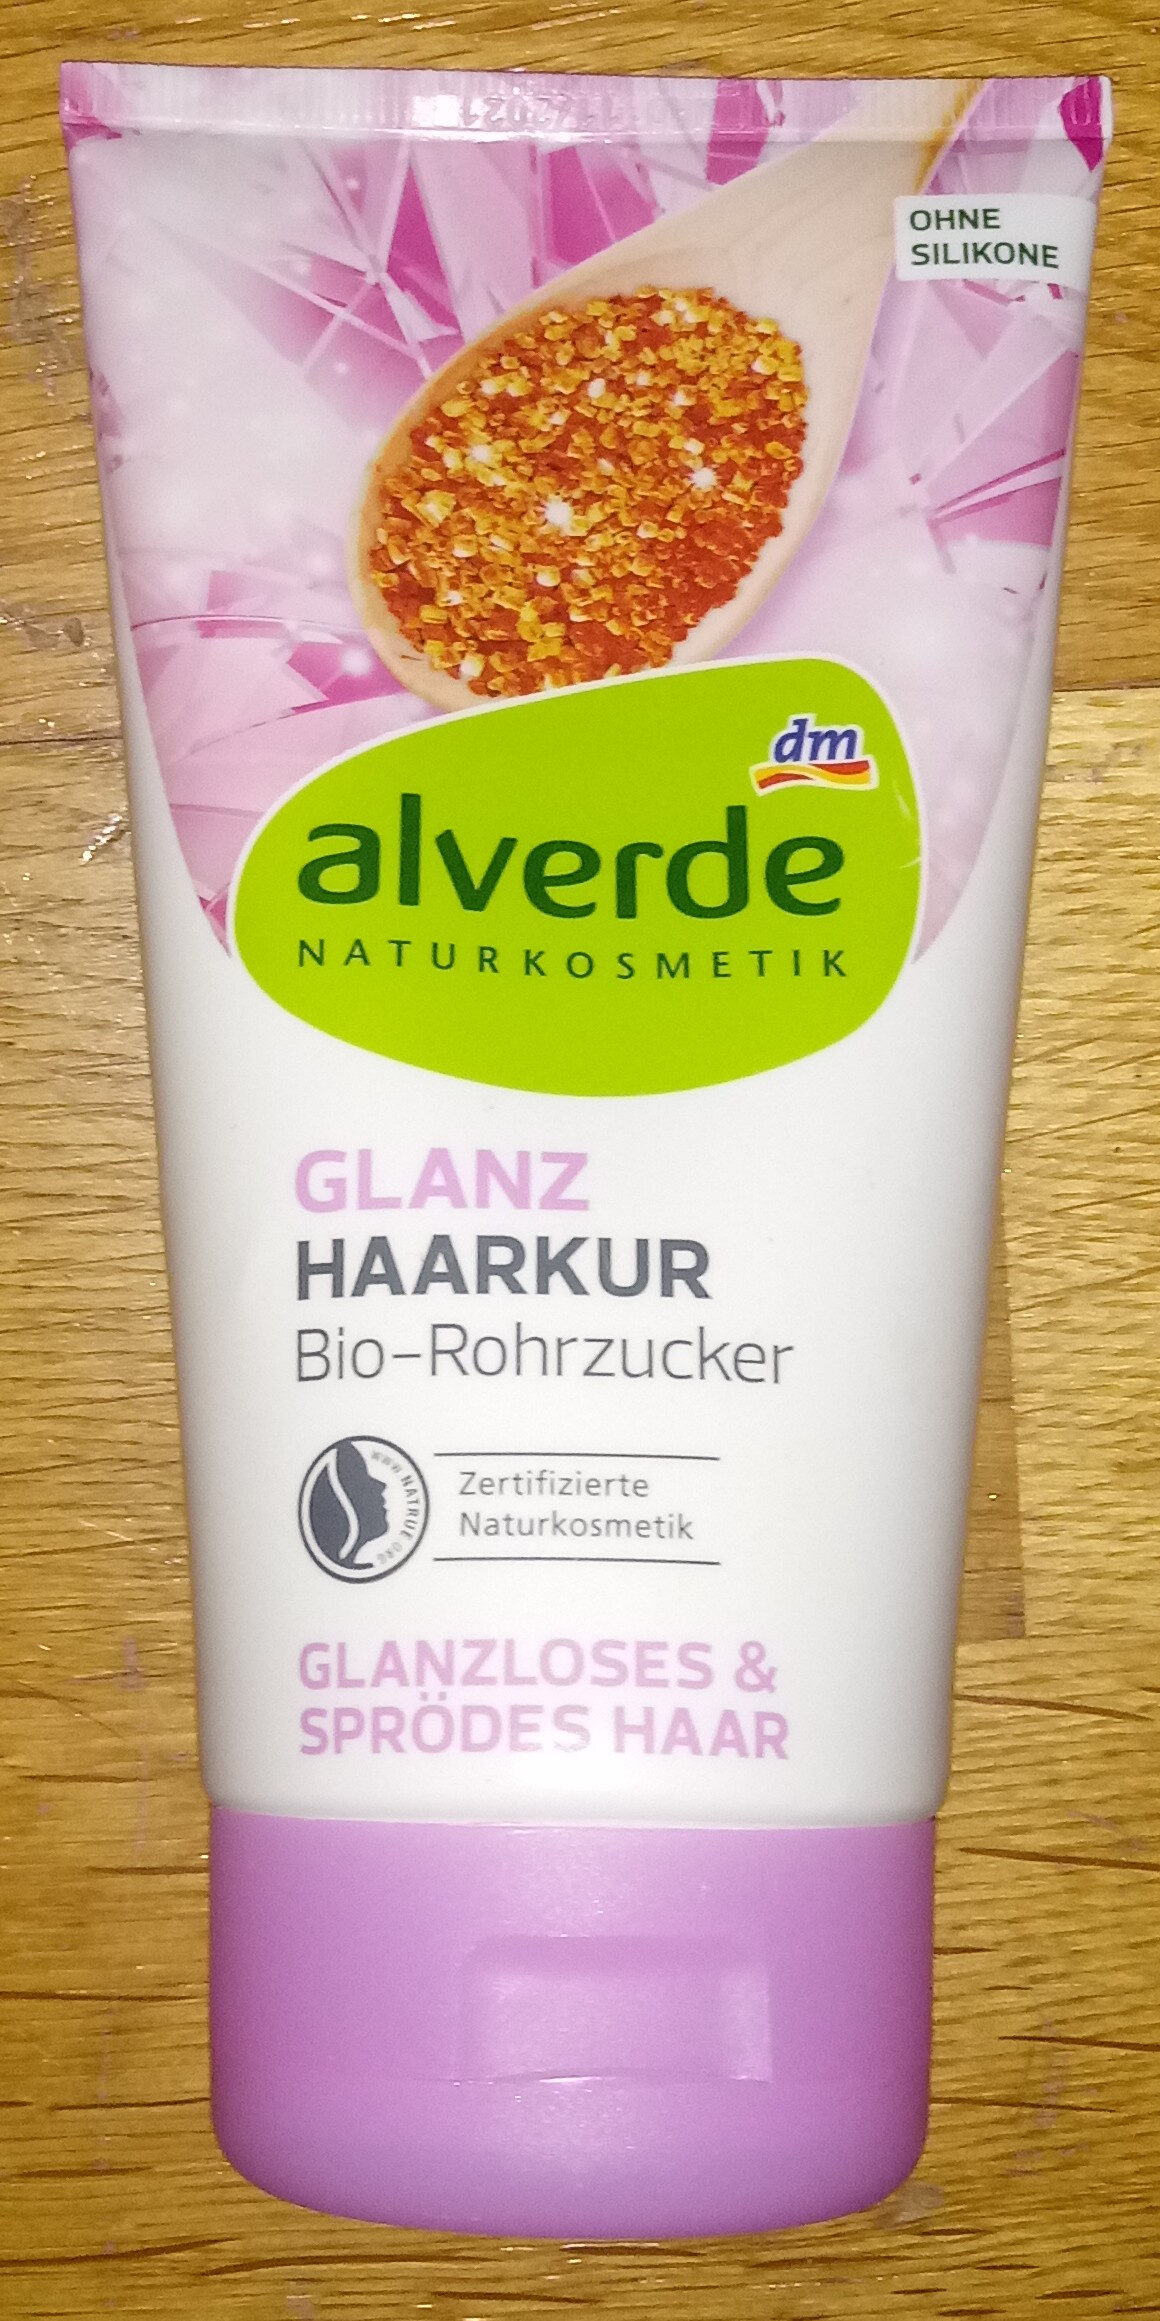 Glanz Haarkur Bio-Rohrzucker Glanzloses und sprödes Haar - Produit - de